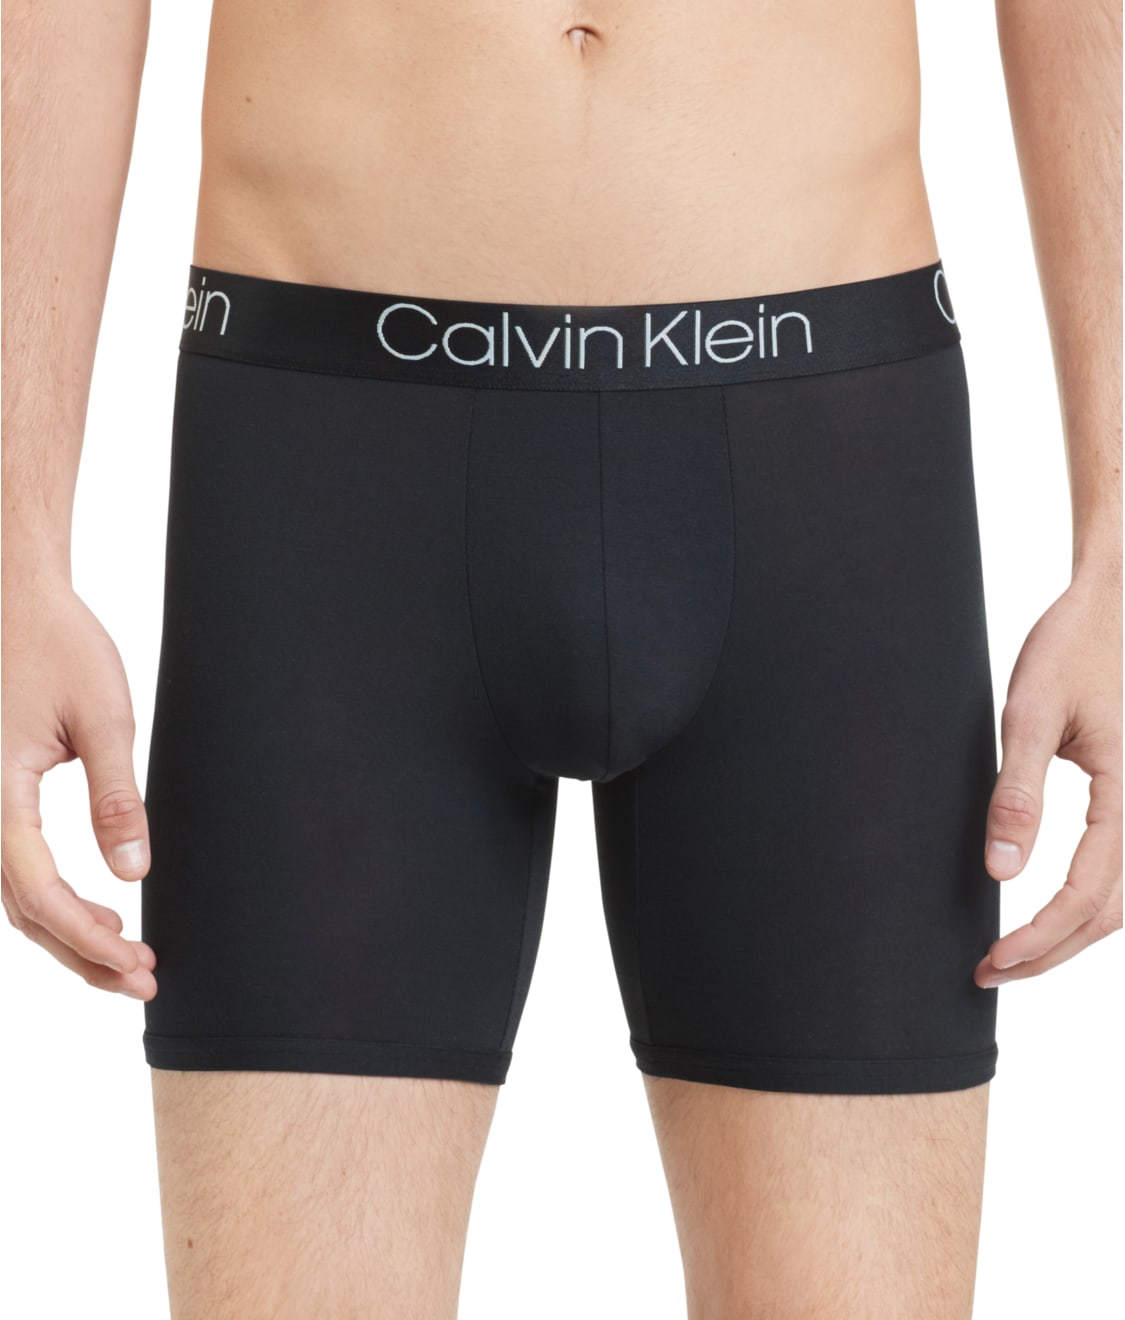 Calvin Klein: Ultra-Soft Modal Boxer Brief NB1797